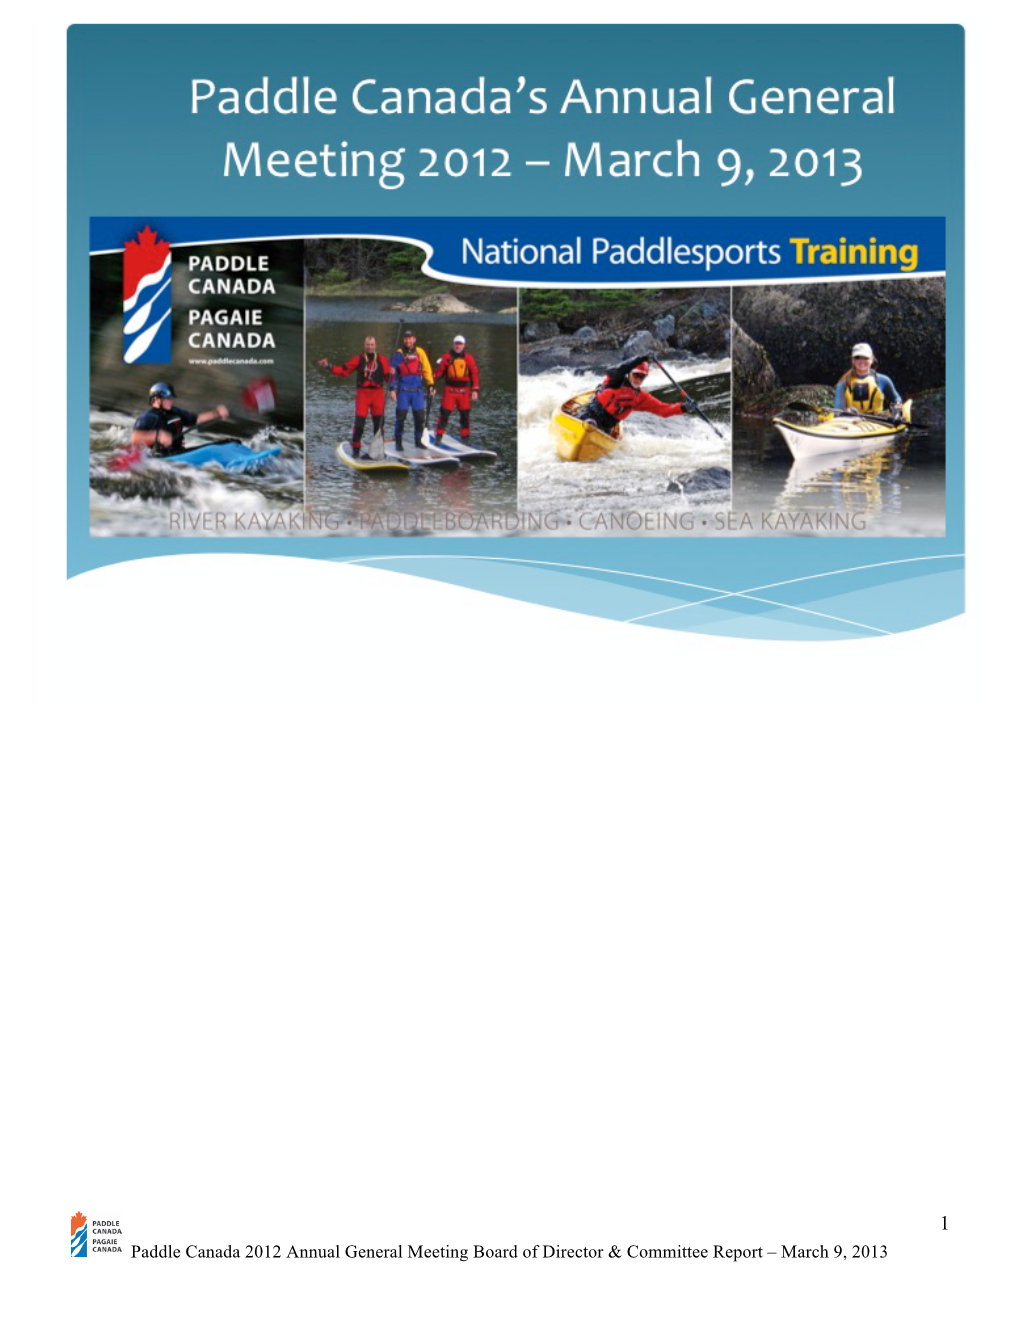 2012 AGM Board of Directors Full Report